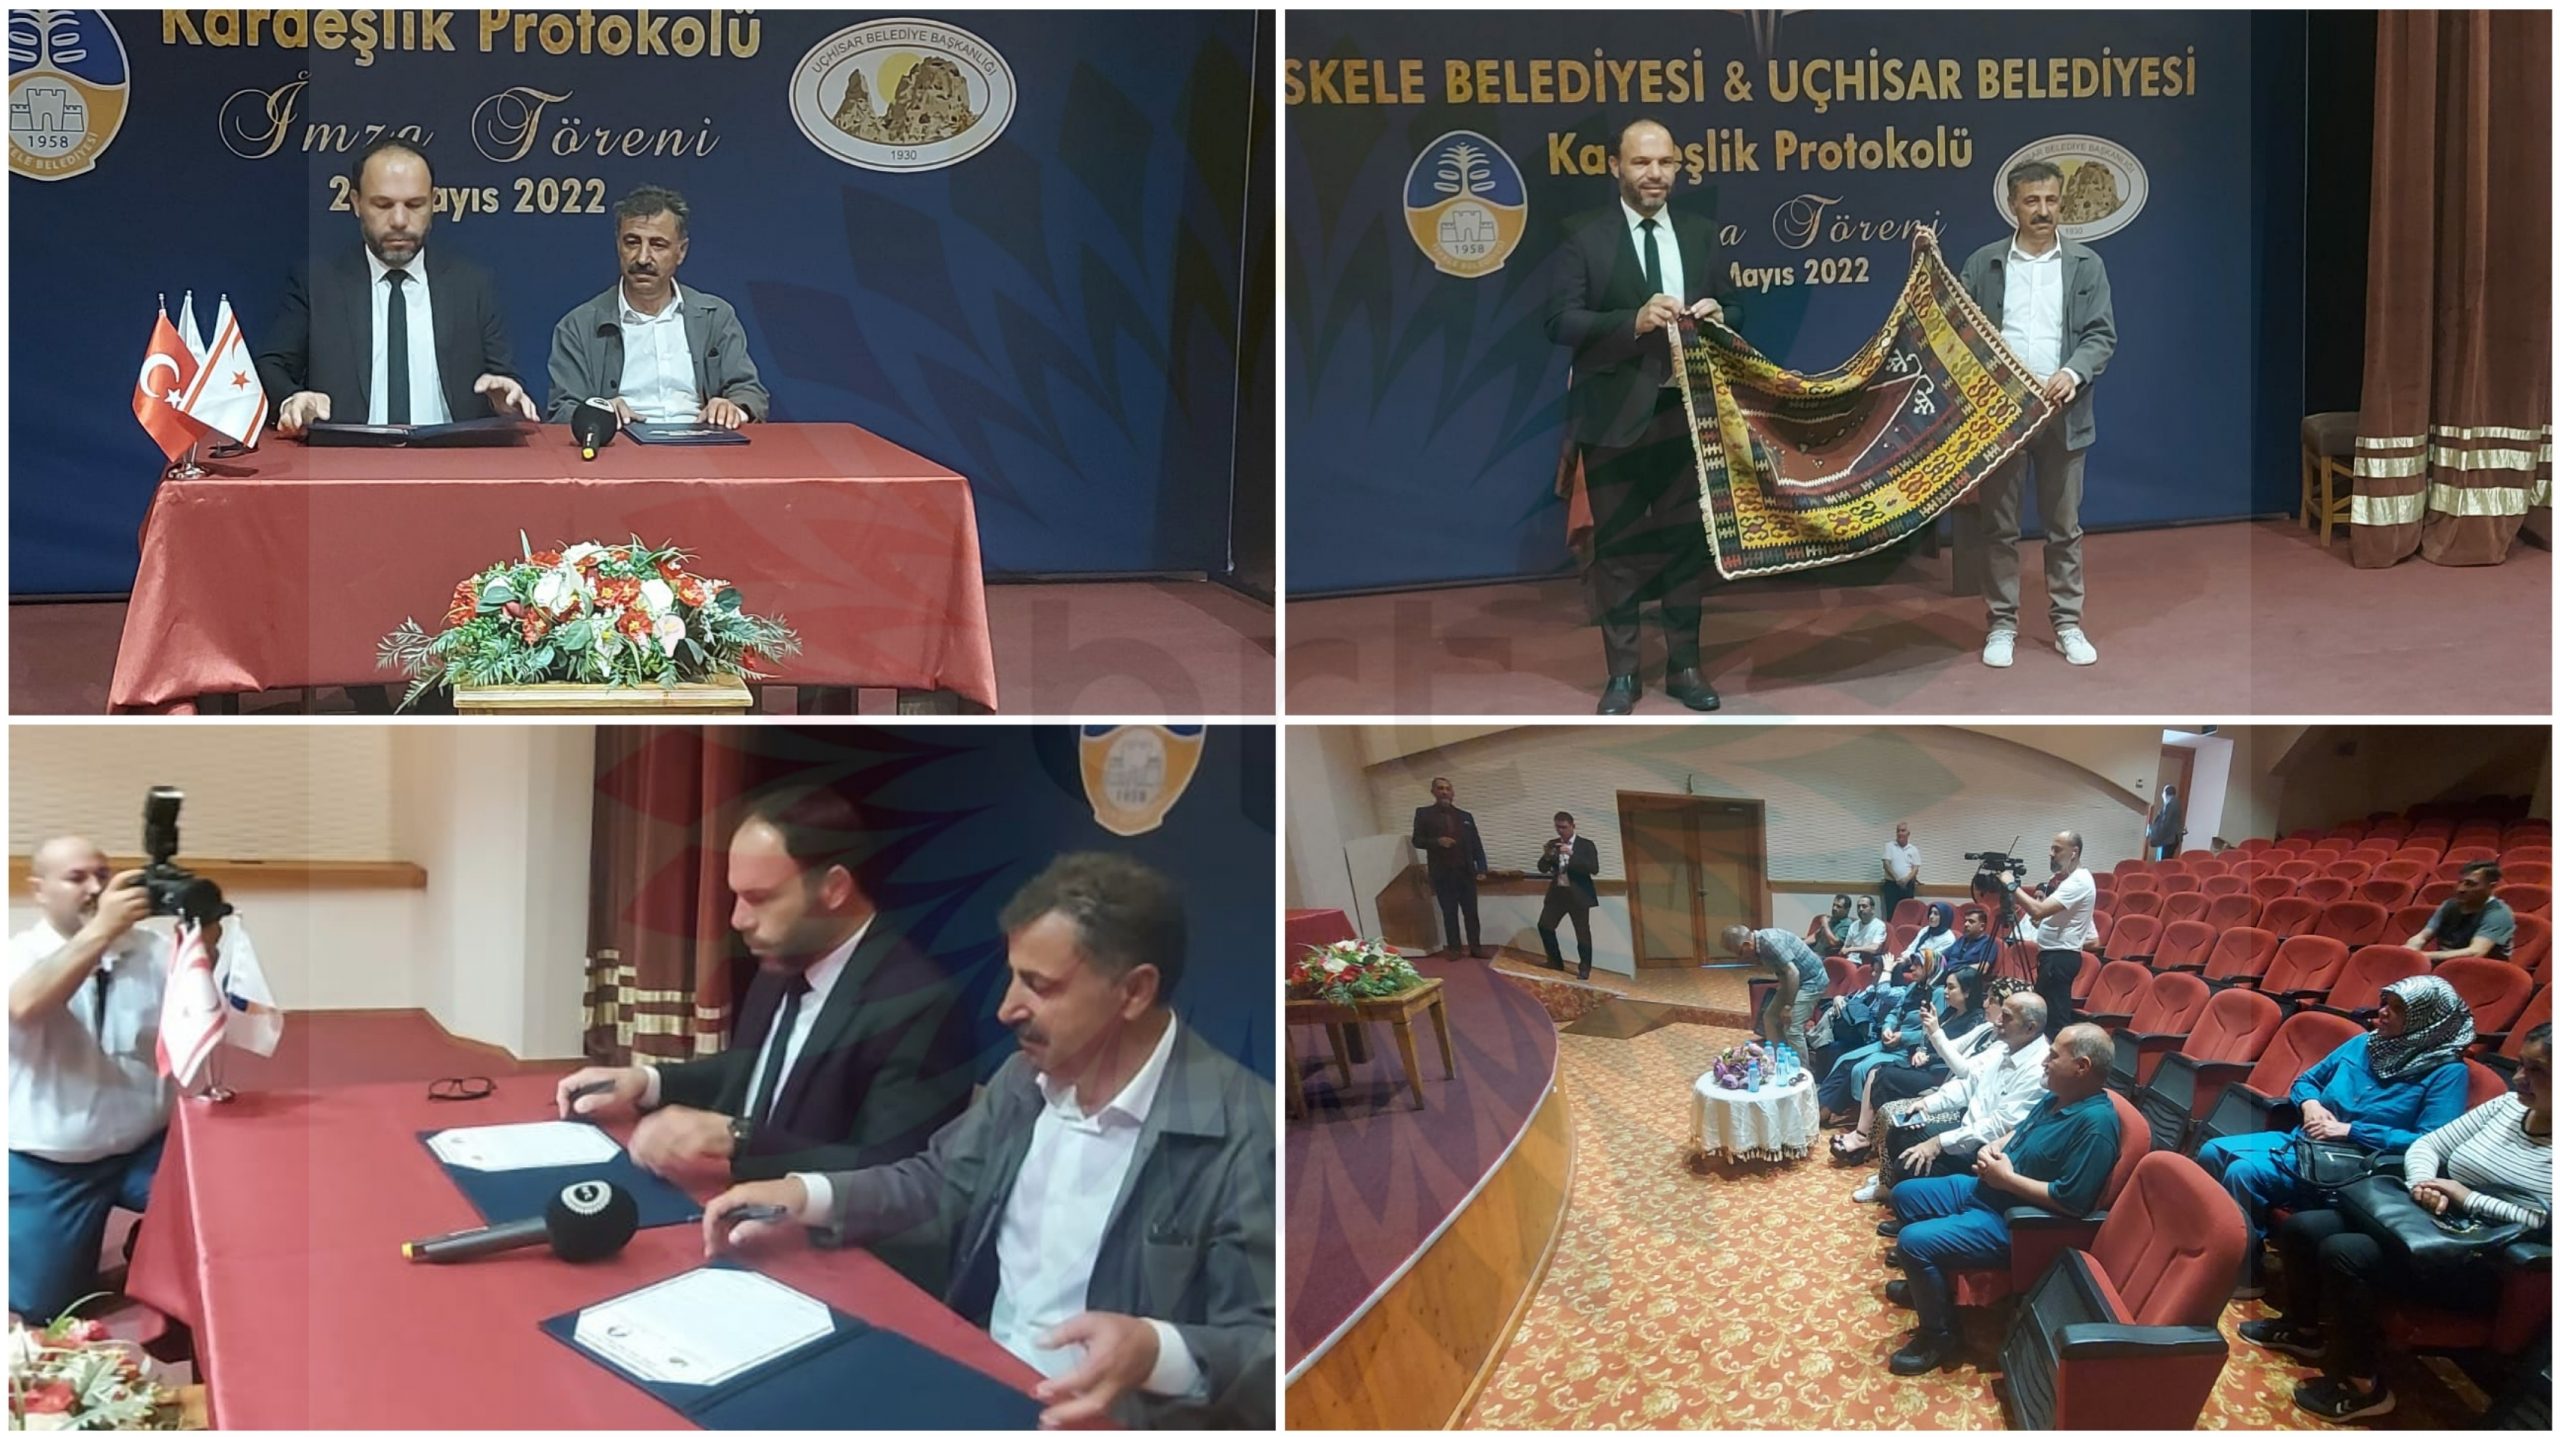 İskele Belediyesi ile Uçhisar Belediyesi arasında  protokolü imzanladı